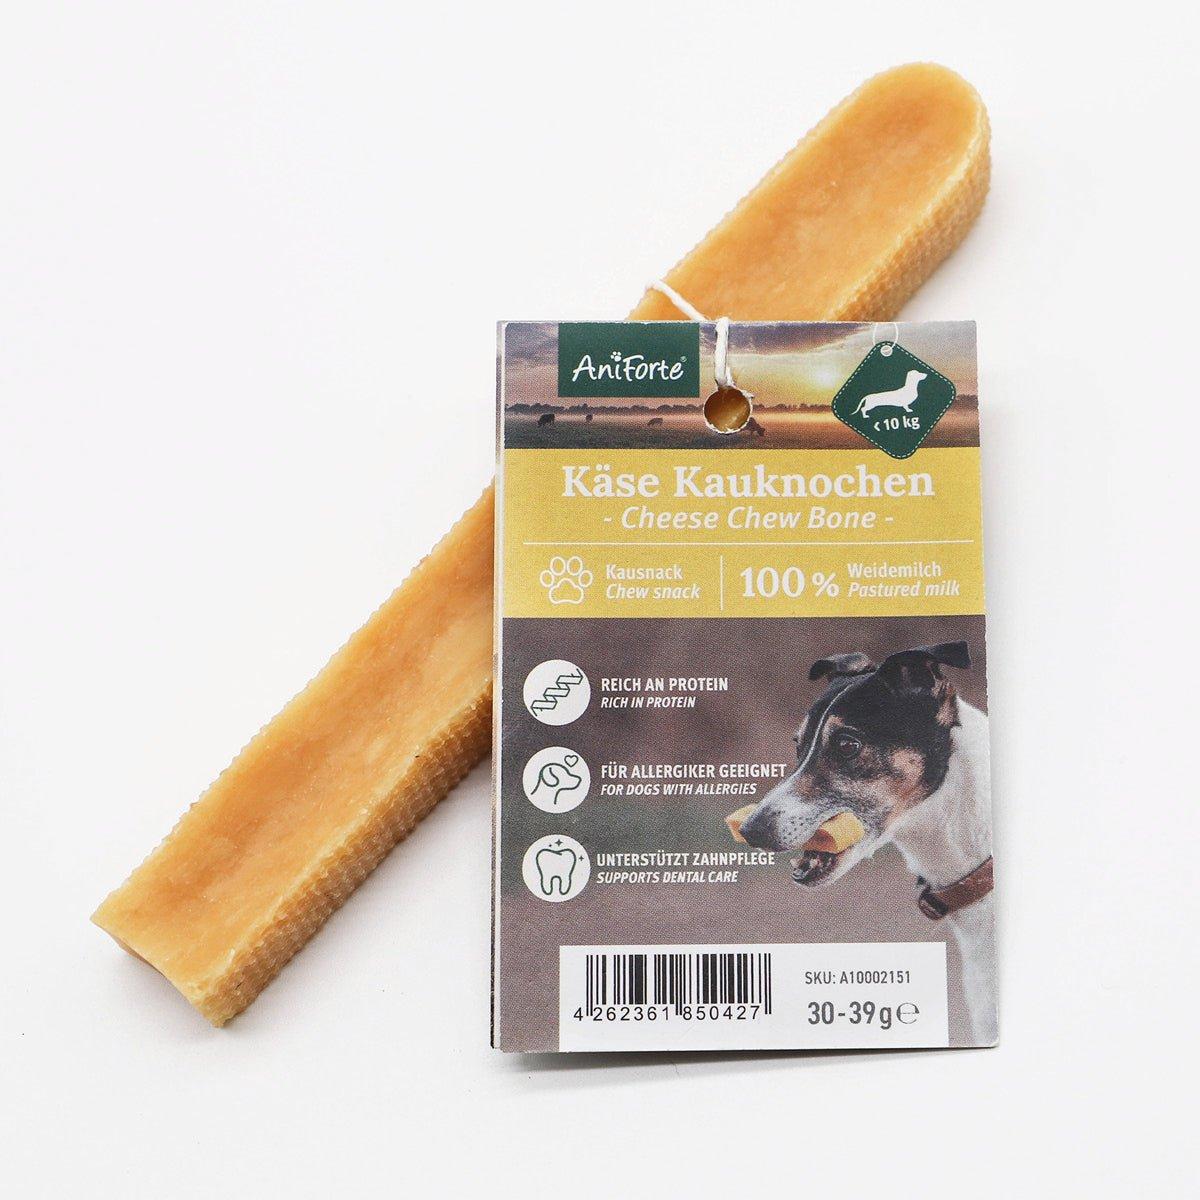 Aniforte Käse Kauknochen - 4320 Gramm